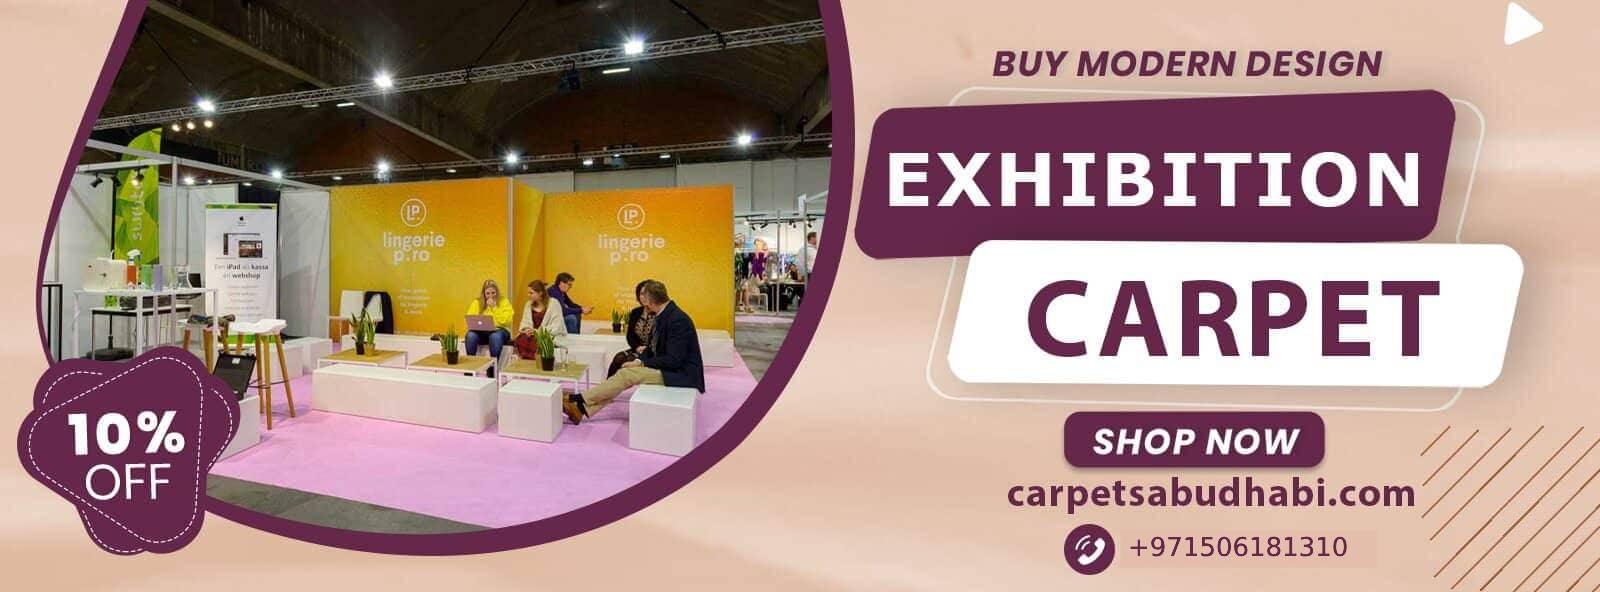 exhibition-carpets2